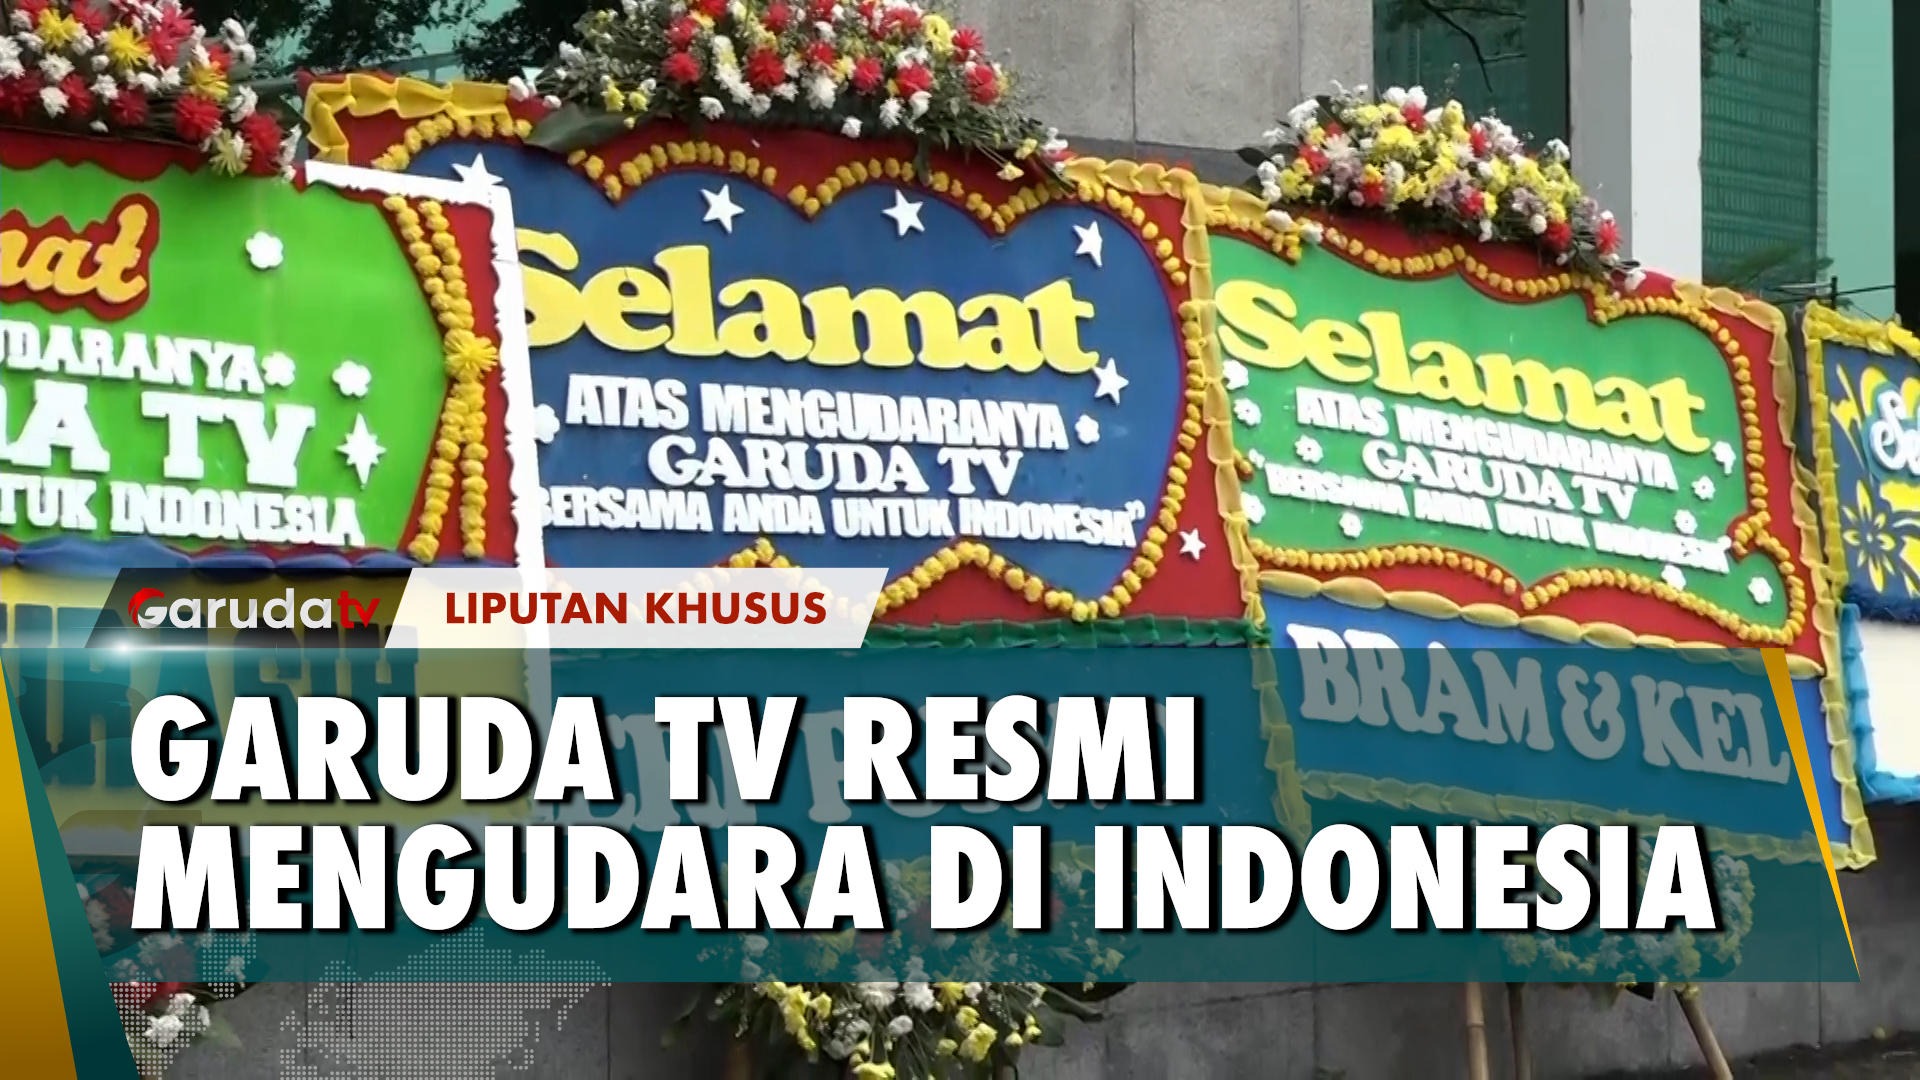 GARUDA TV akhirnya resmi mengudara di saluran UHF televisi Indonesia. Kami mengucapkan terima kasih banyak atas perhatian, doa, serta harapan yang diberikan oleh sejumlah instansi publik, korporasi, dan masyarakat kepada GARUDA TV.